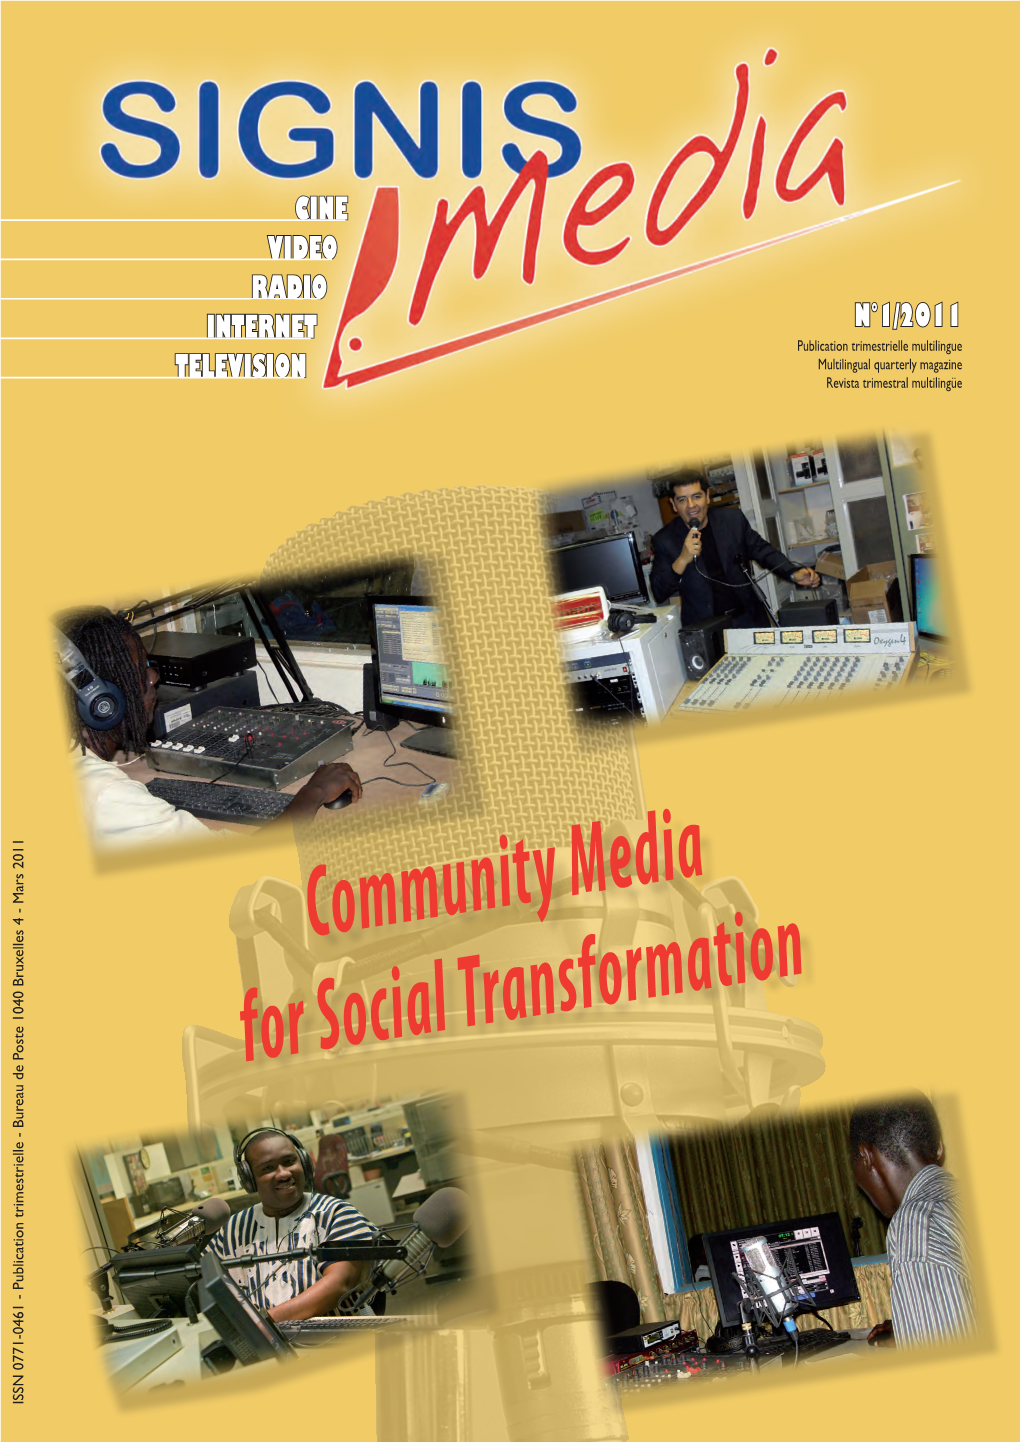 Community Media for Social Transformation